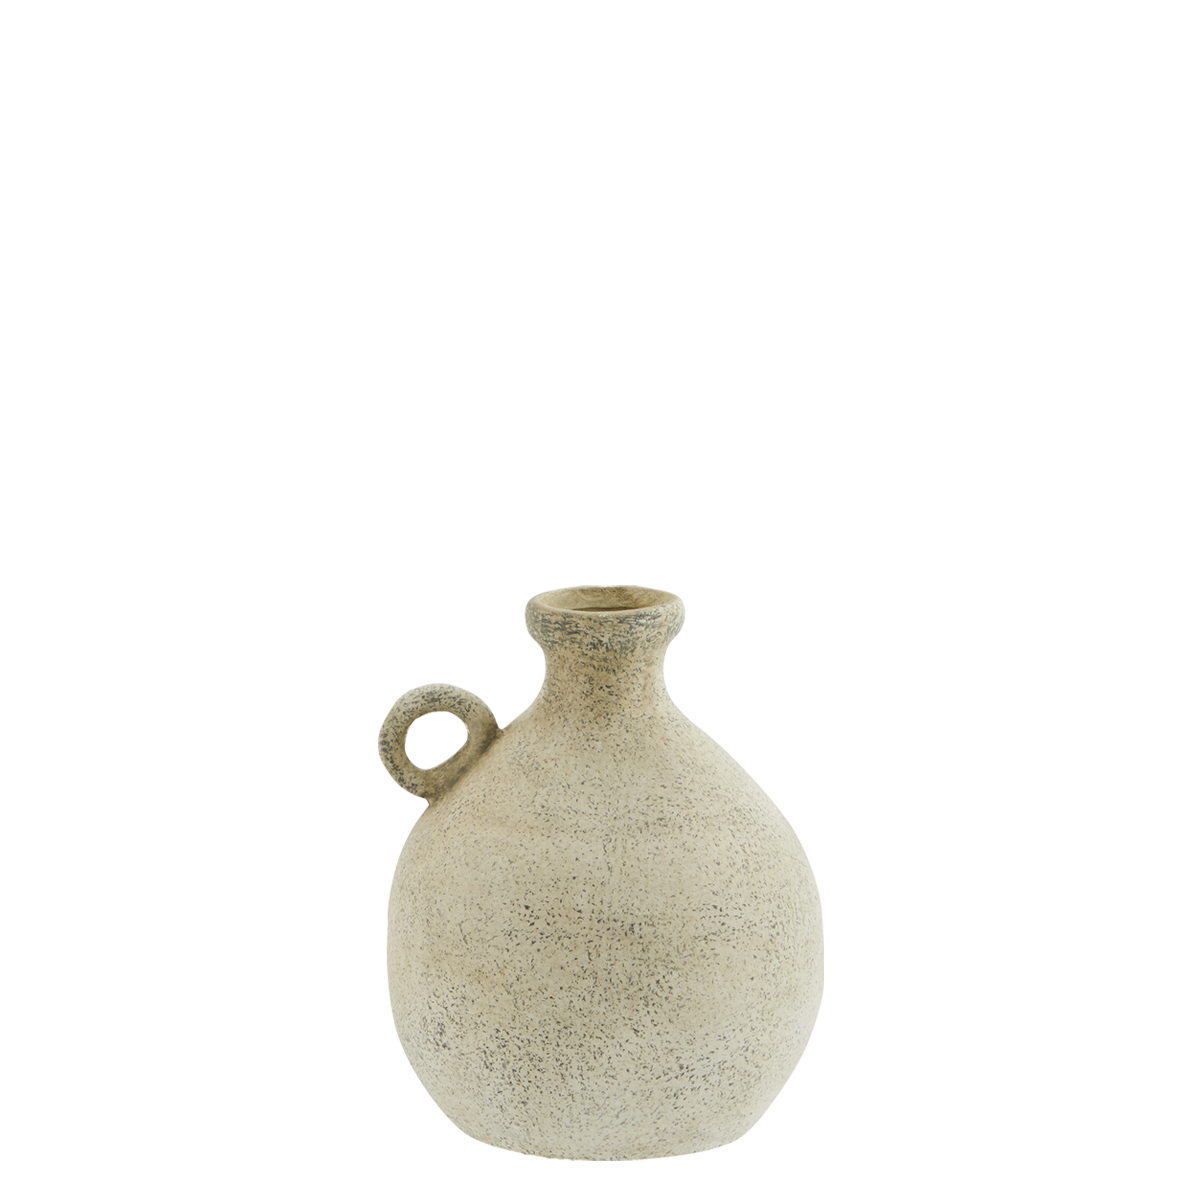 Terracotta vase w/ handle